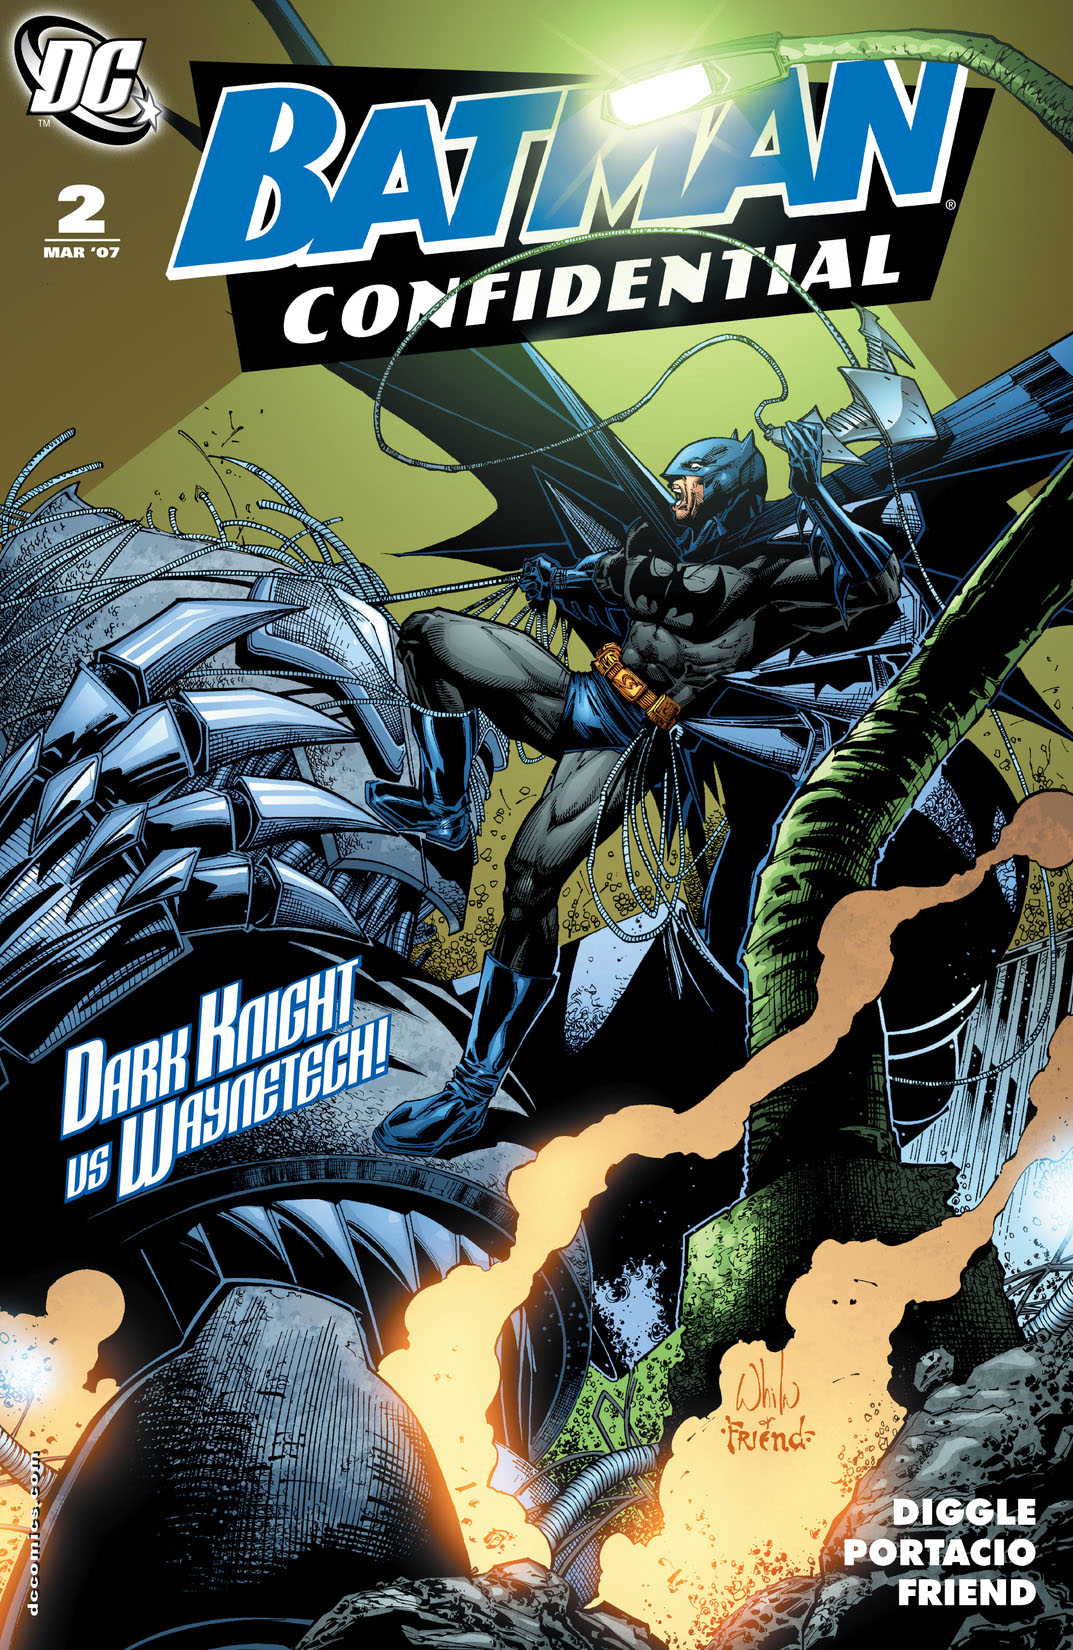 Batman Confidential #2 preview images